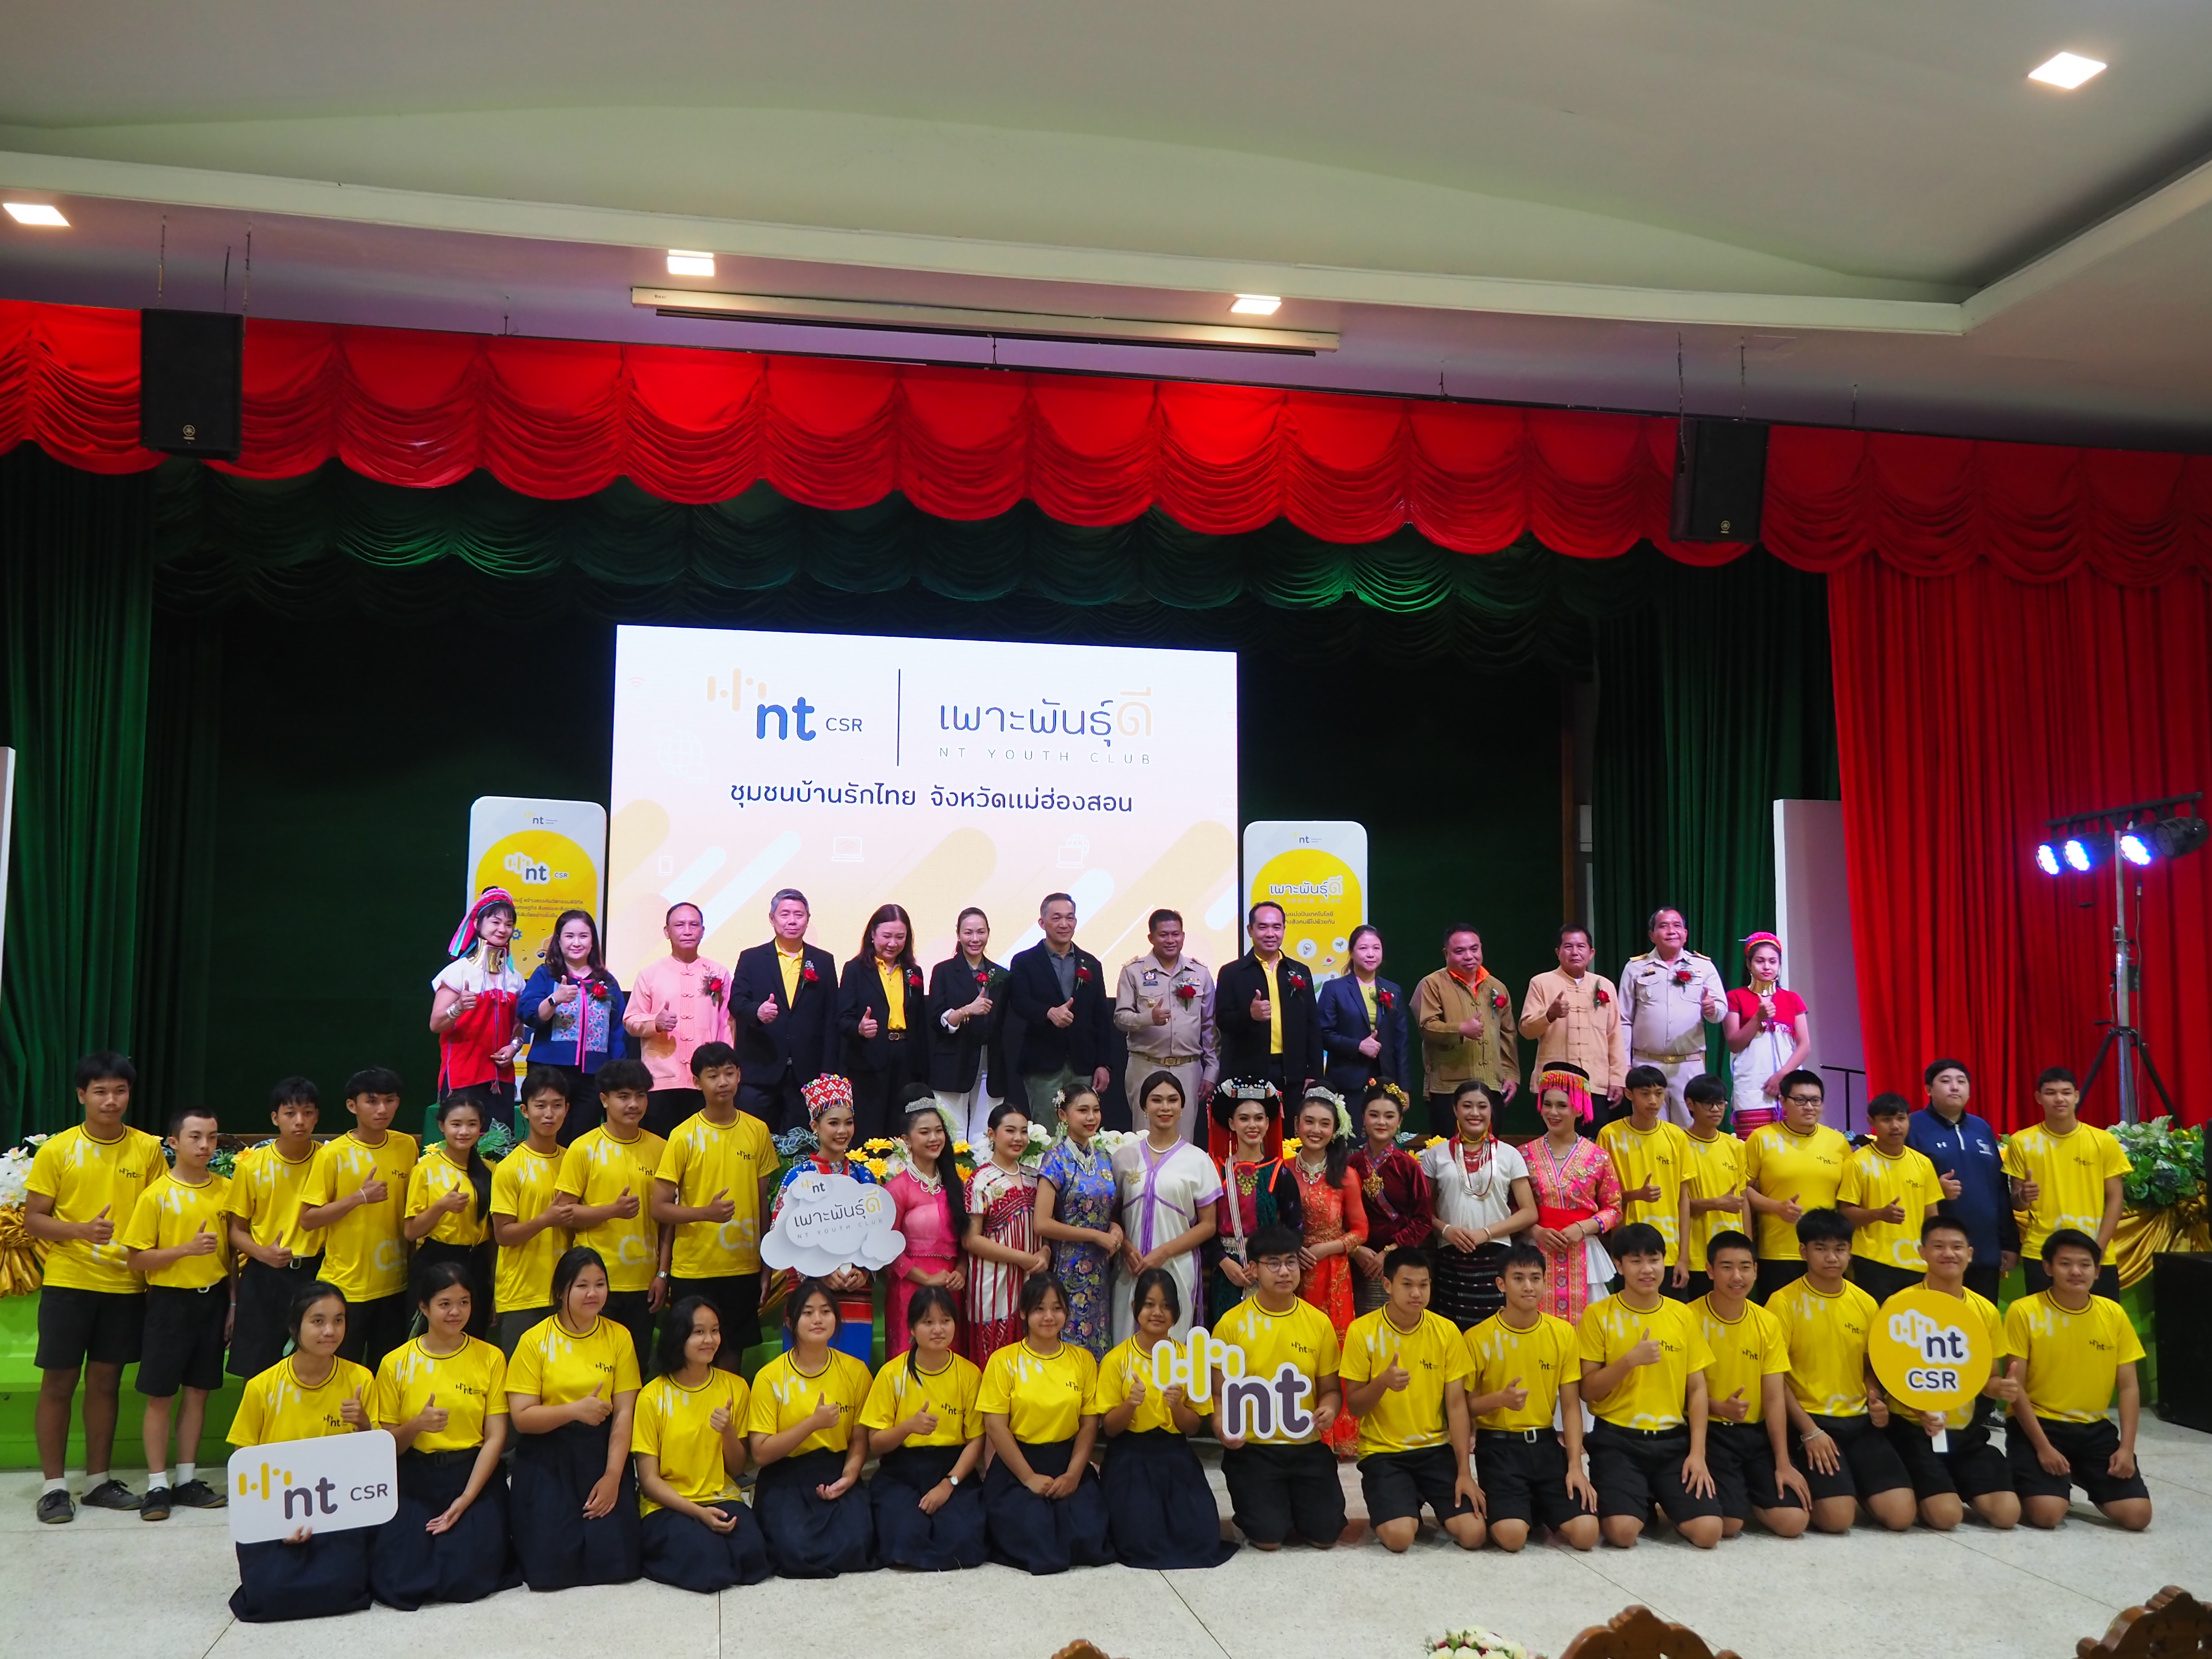 ชุมชนบ้านรักไทยจังหวัดแม่ฮ่องสอน เข้าร่วมโครงการเพาะพันธุ์ดี NT Youth Club ยกระดับคุณภาพชีวิตชุมชนด้วยเทคโนโลยี